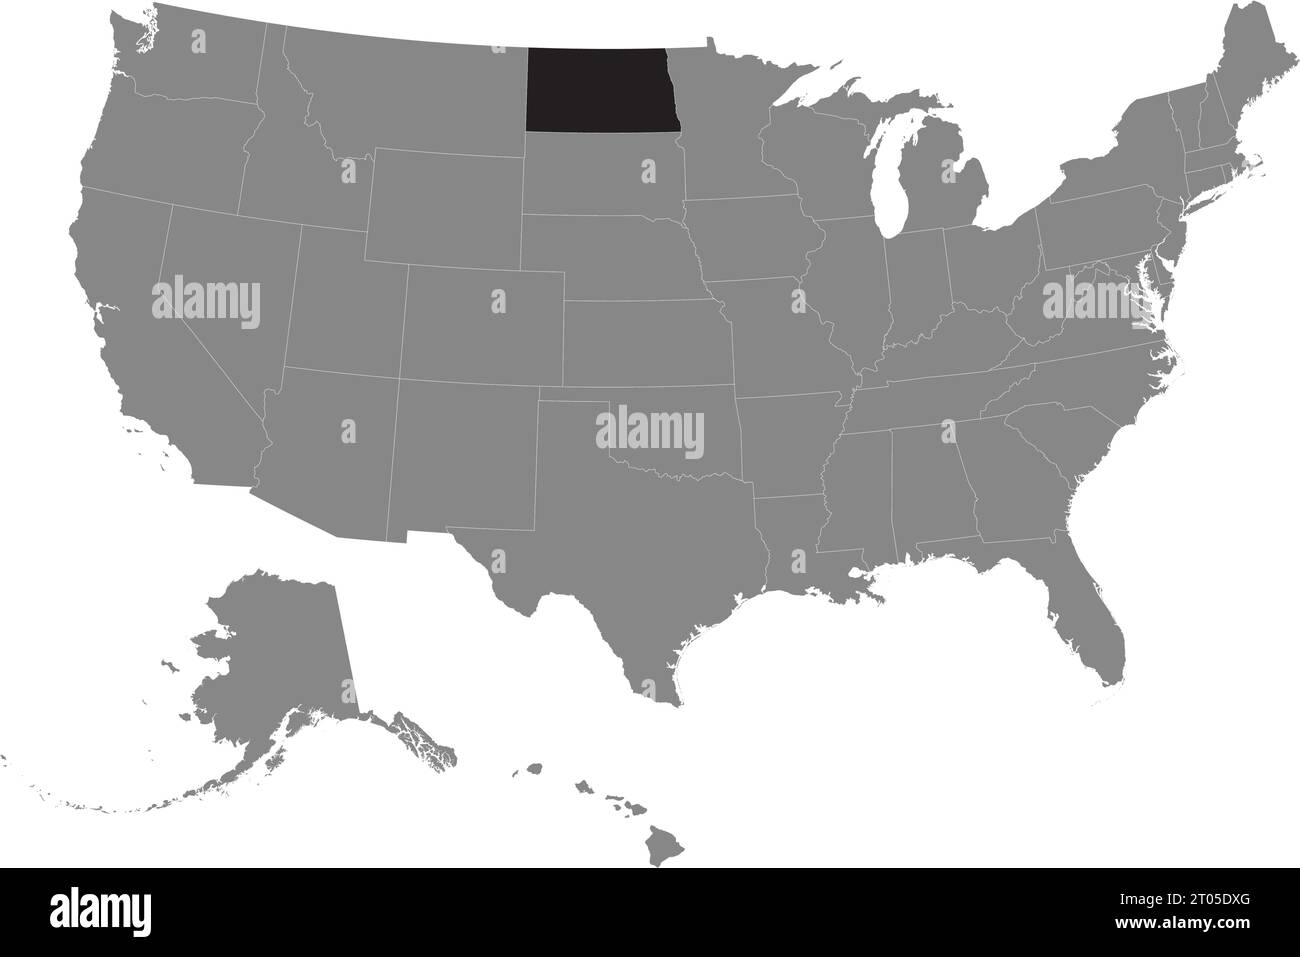 Schwarze CMYK-Bundeskarte von NORTH DAKOTA in detaillierter grauer, leerer politischer Karte der Vereinigten Staaten von Amerika auf transparentem Hintergrund Stock Vektor